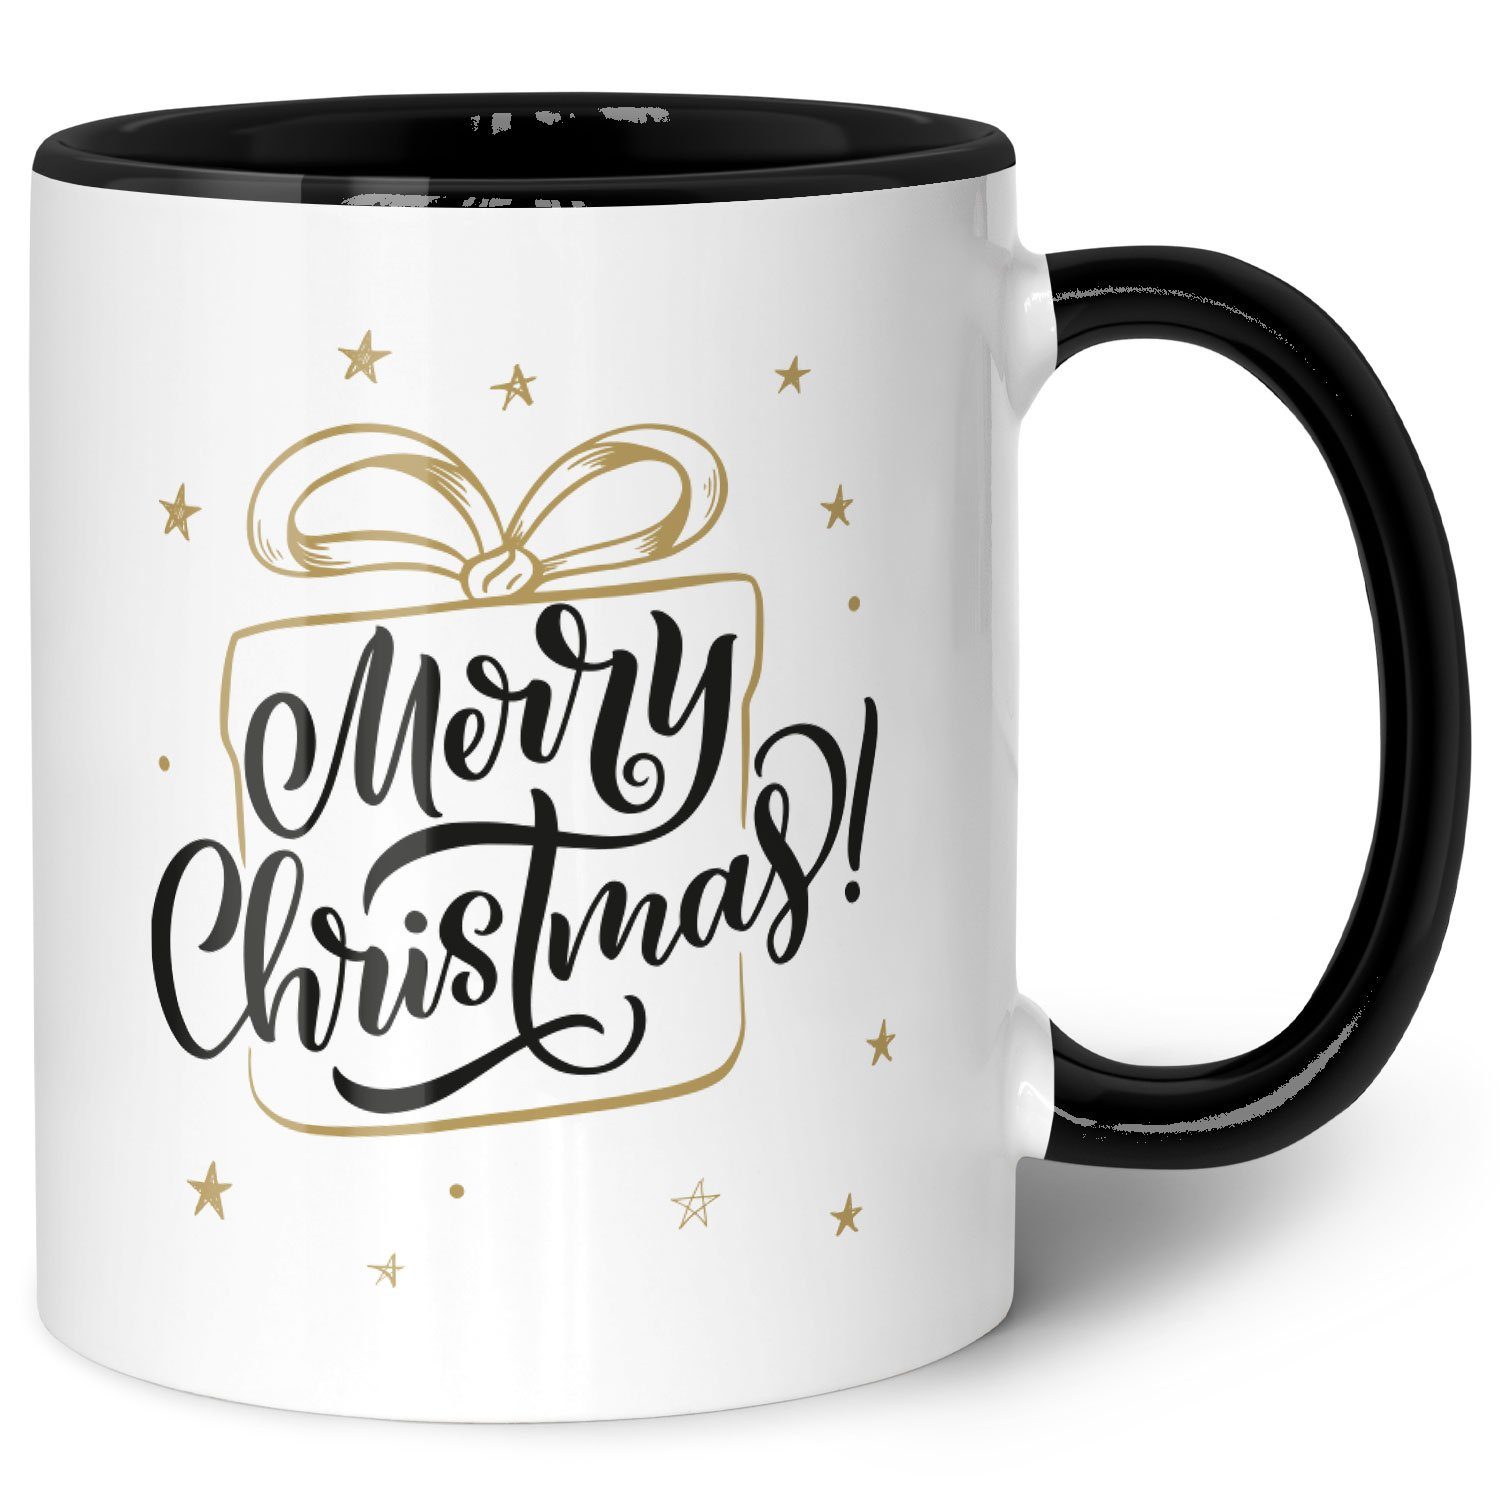 GRAVURZEILE Tasse mit Weihnachtsmotiv - Geschenke für Frauen & Männer zu Weihnachten, Spülmaschinenfest - Merry Christmas Geschenk - Schwarz und Weiß